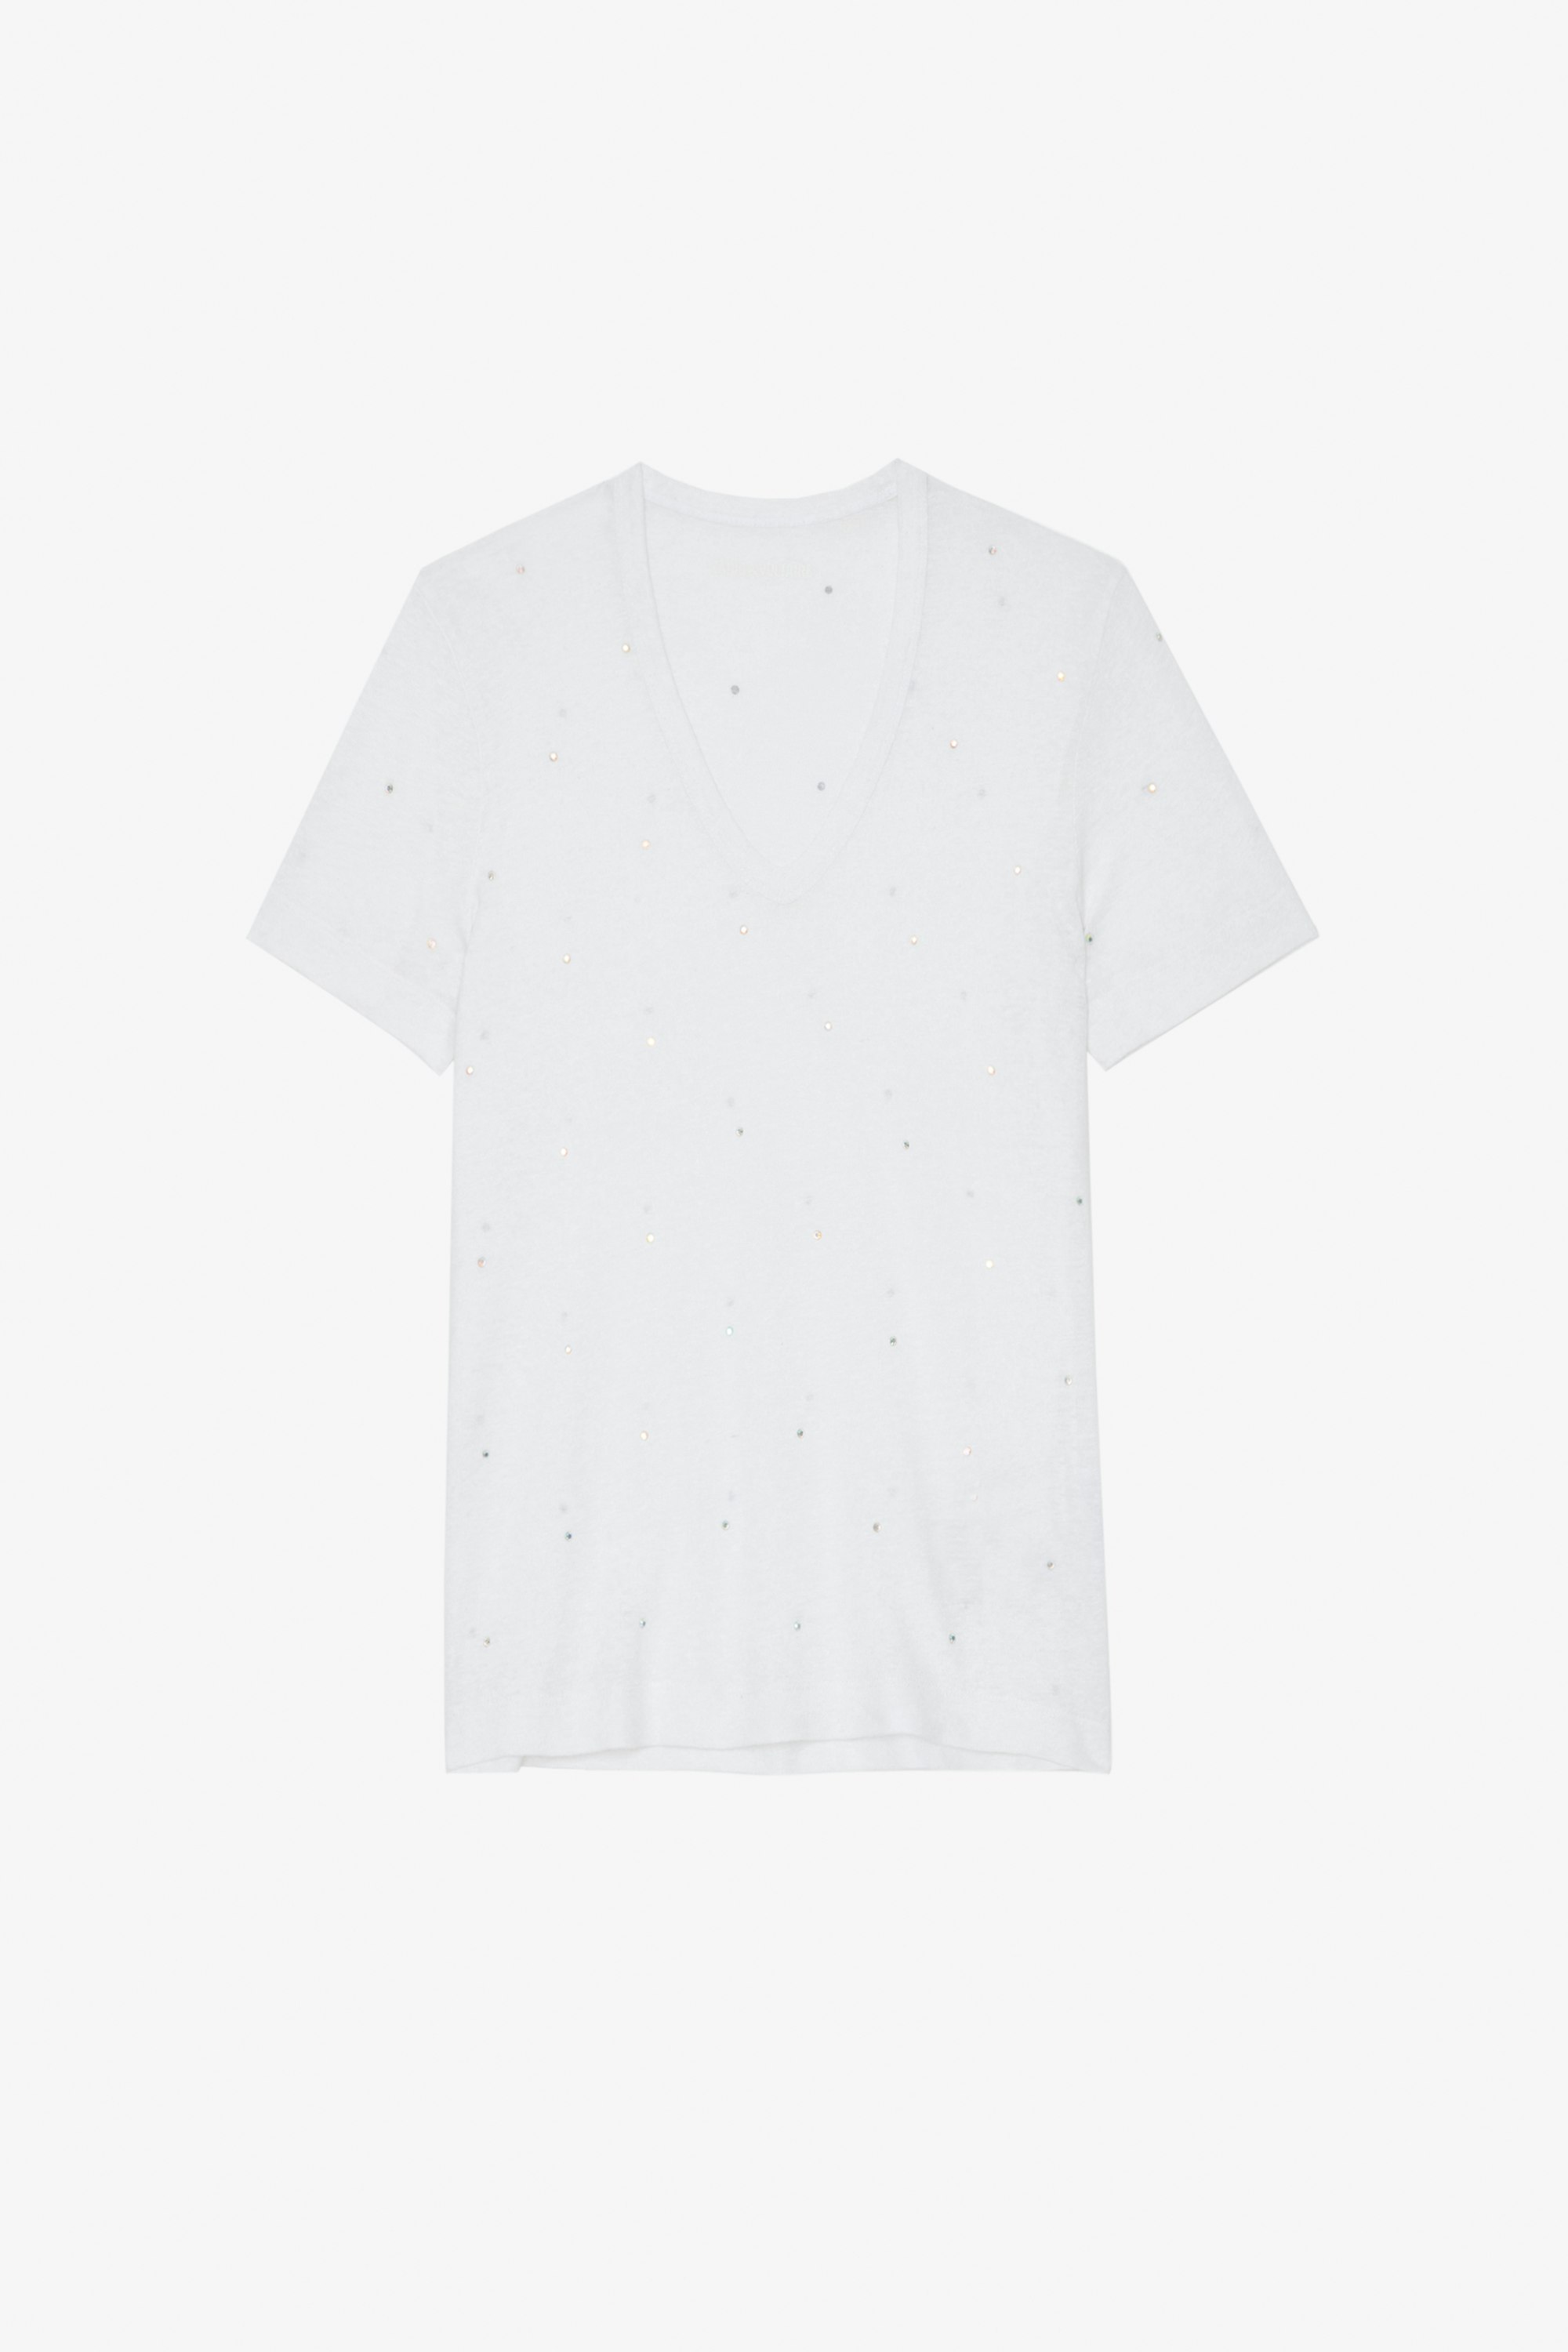 Wassa T-Shirt Women's white rhinestone-studded T-shirt